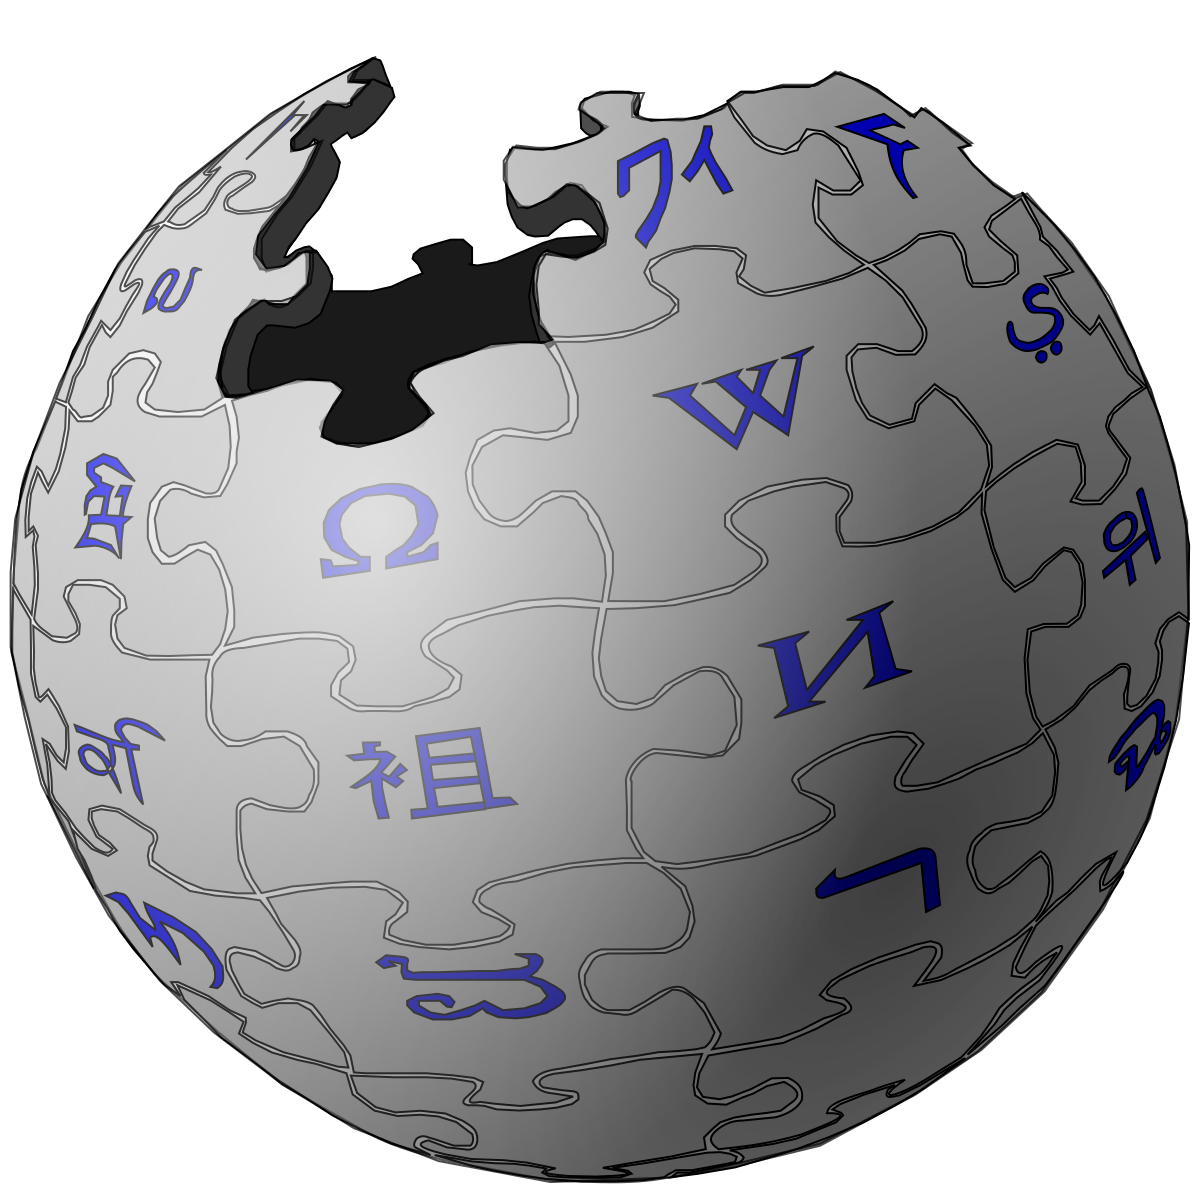 Https www wikipedia. Википедия логотип. Википедия. Значок Википедии. Википедия картинки.